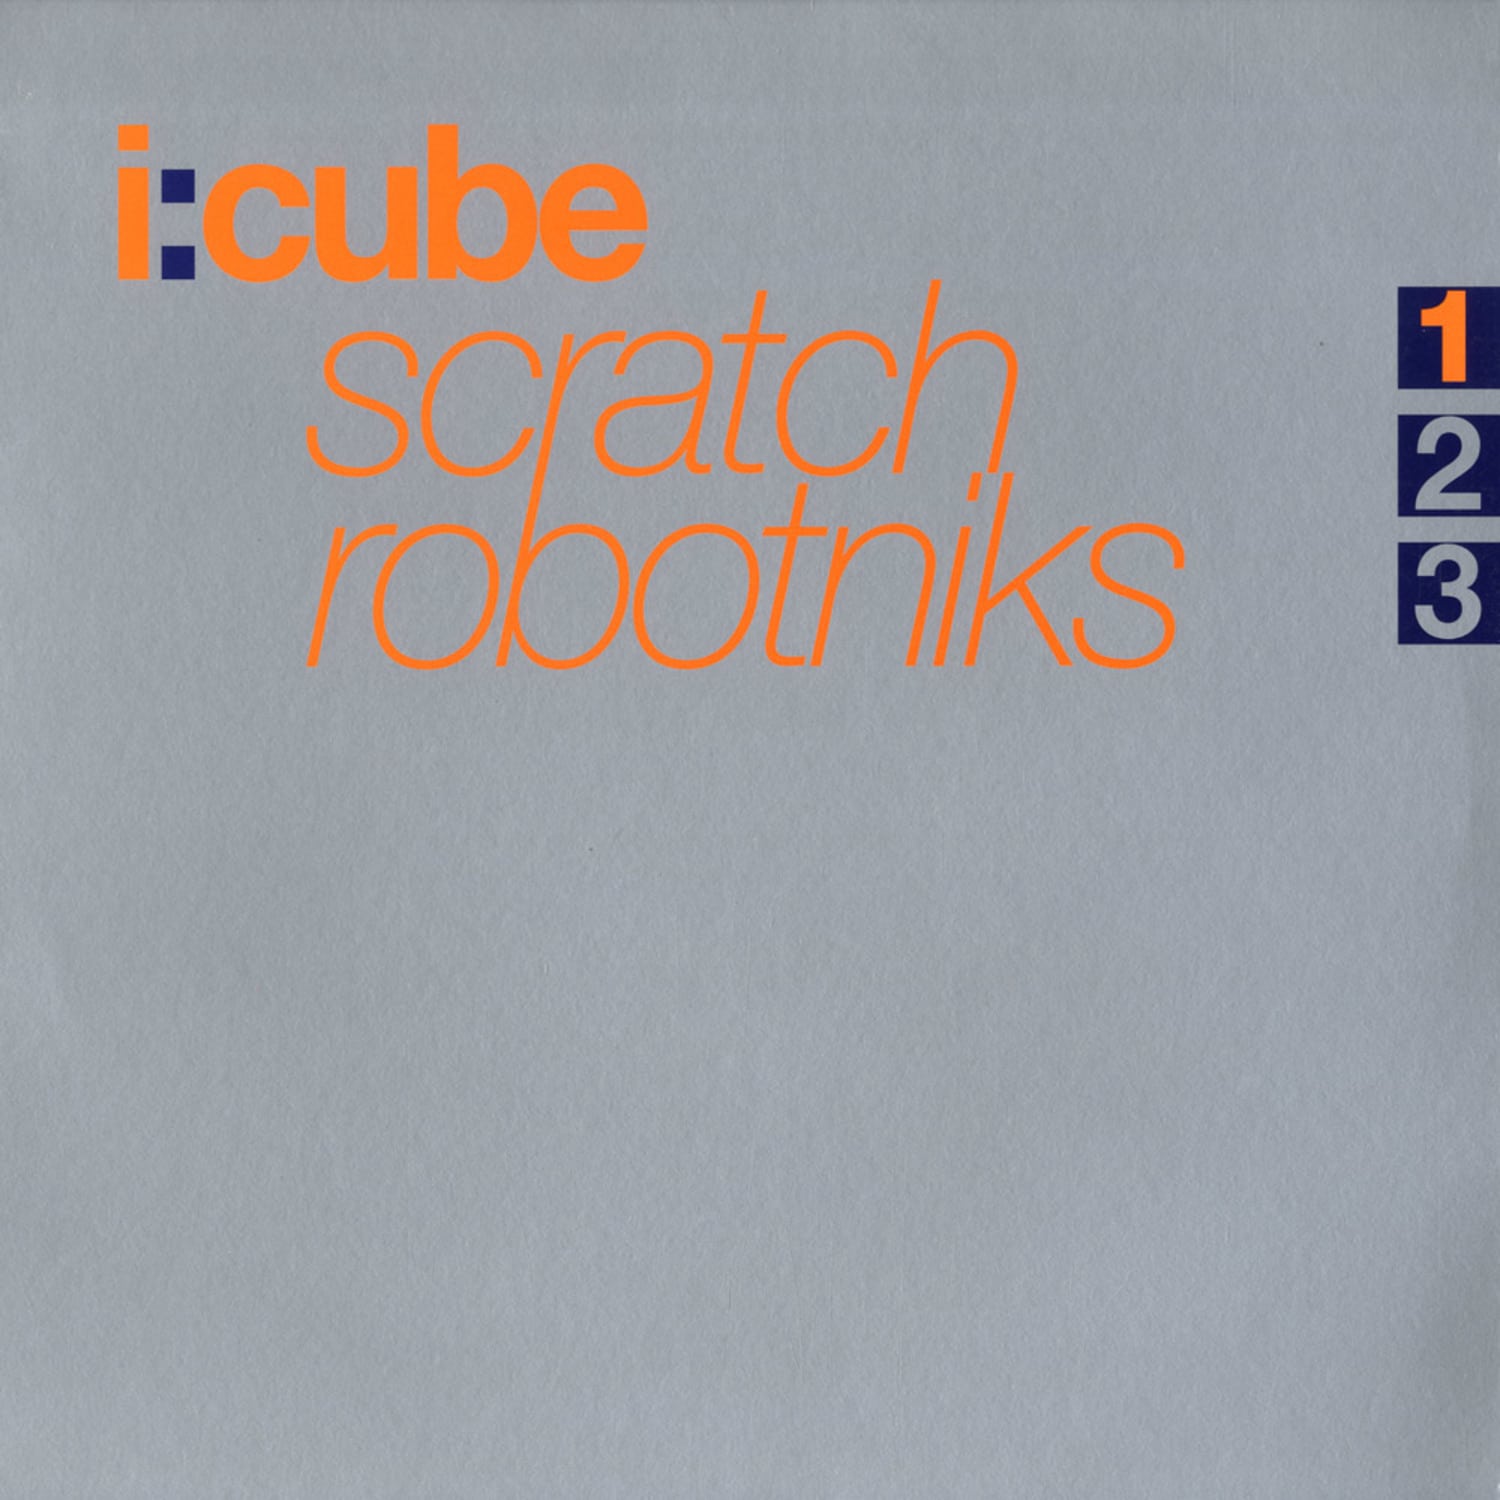 I Cube - SCRATCH ROBOTNIKS